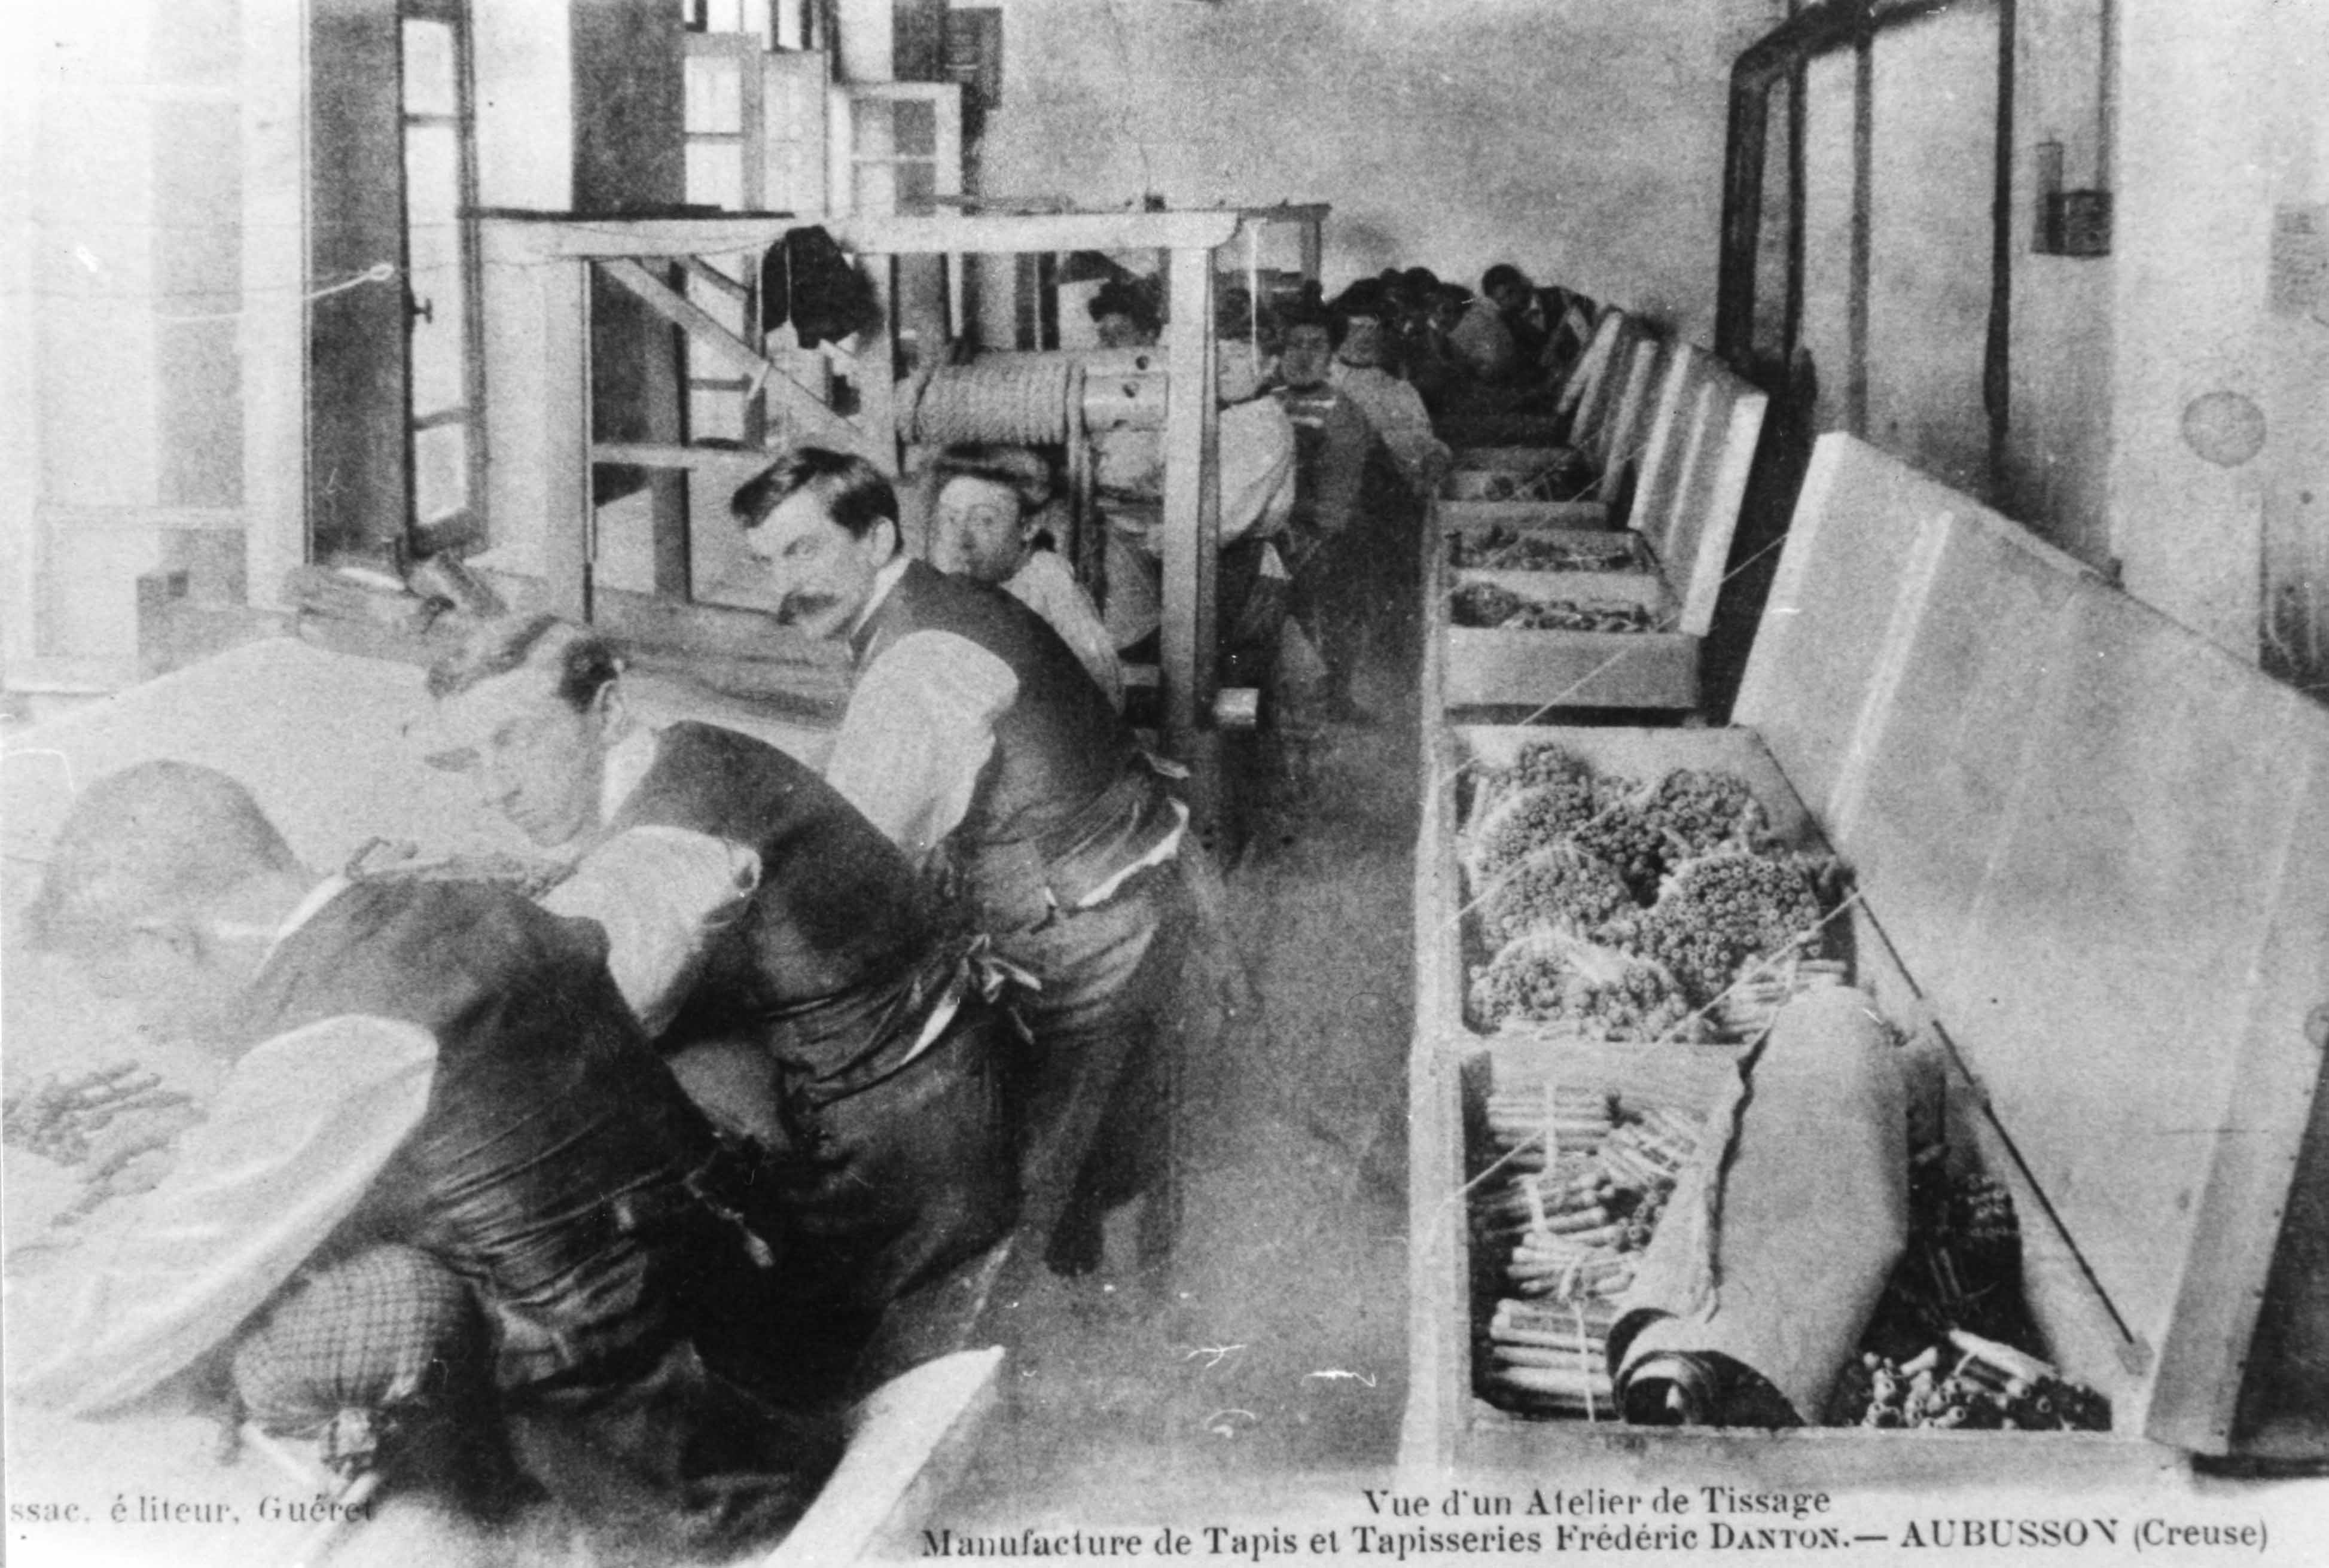 Carte postale (1er quart 20e siècle) : un atelier de tissage de la manufacture Danton, avec les ouvriers au travail (Aubusson, centre de documentation du Musée départemental de la Tapisserie)